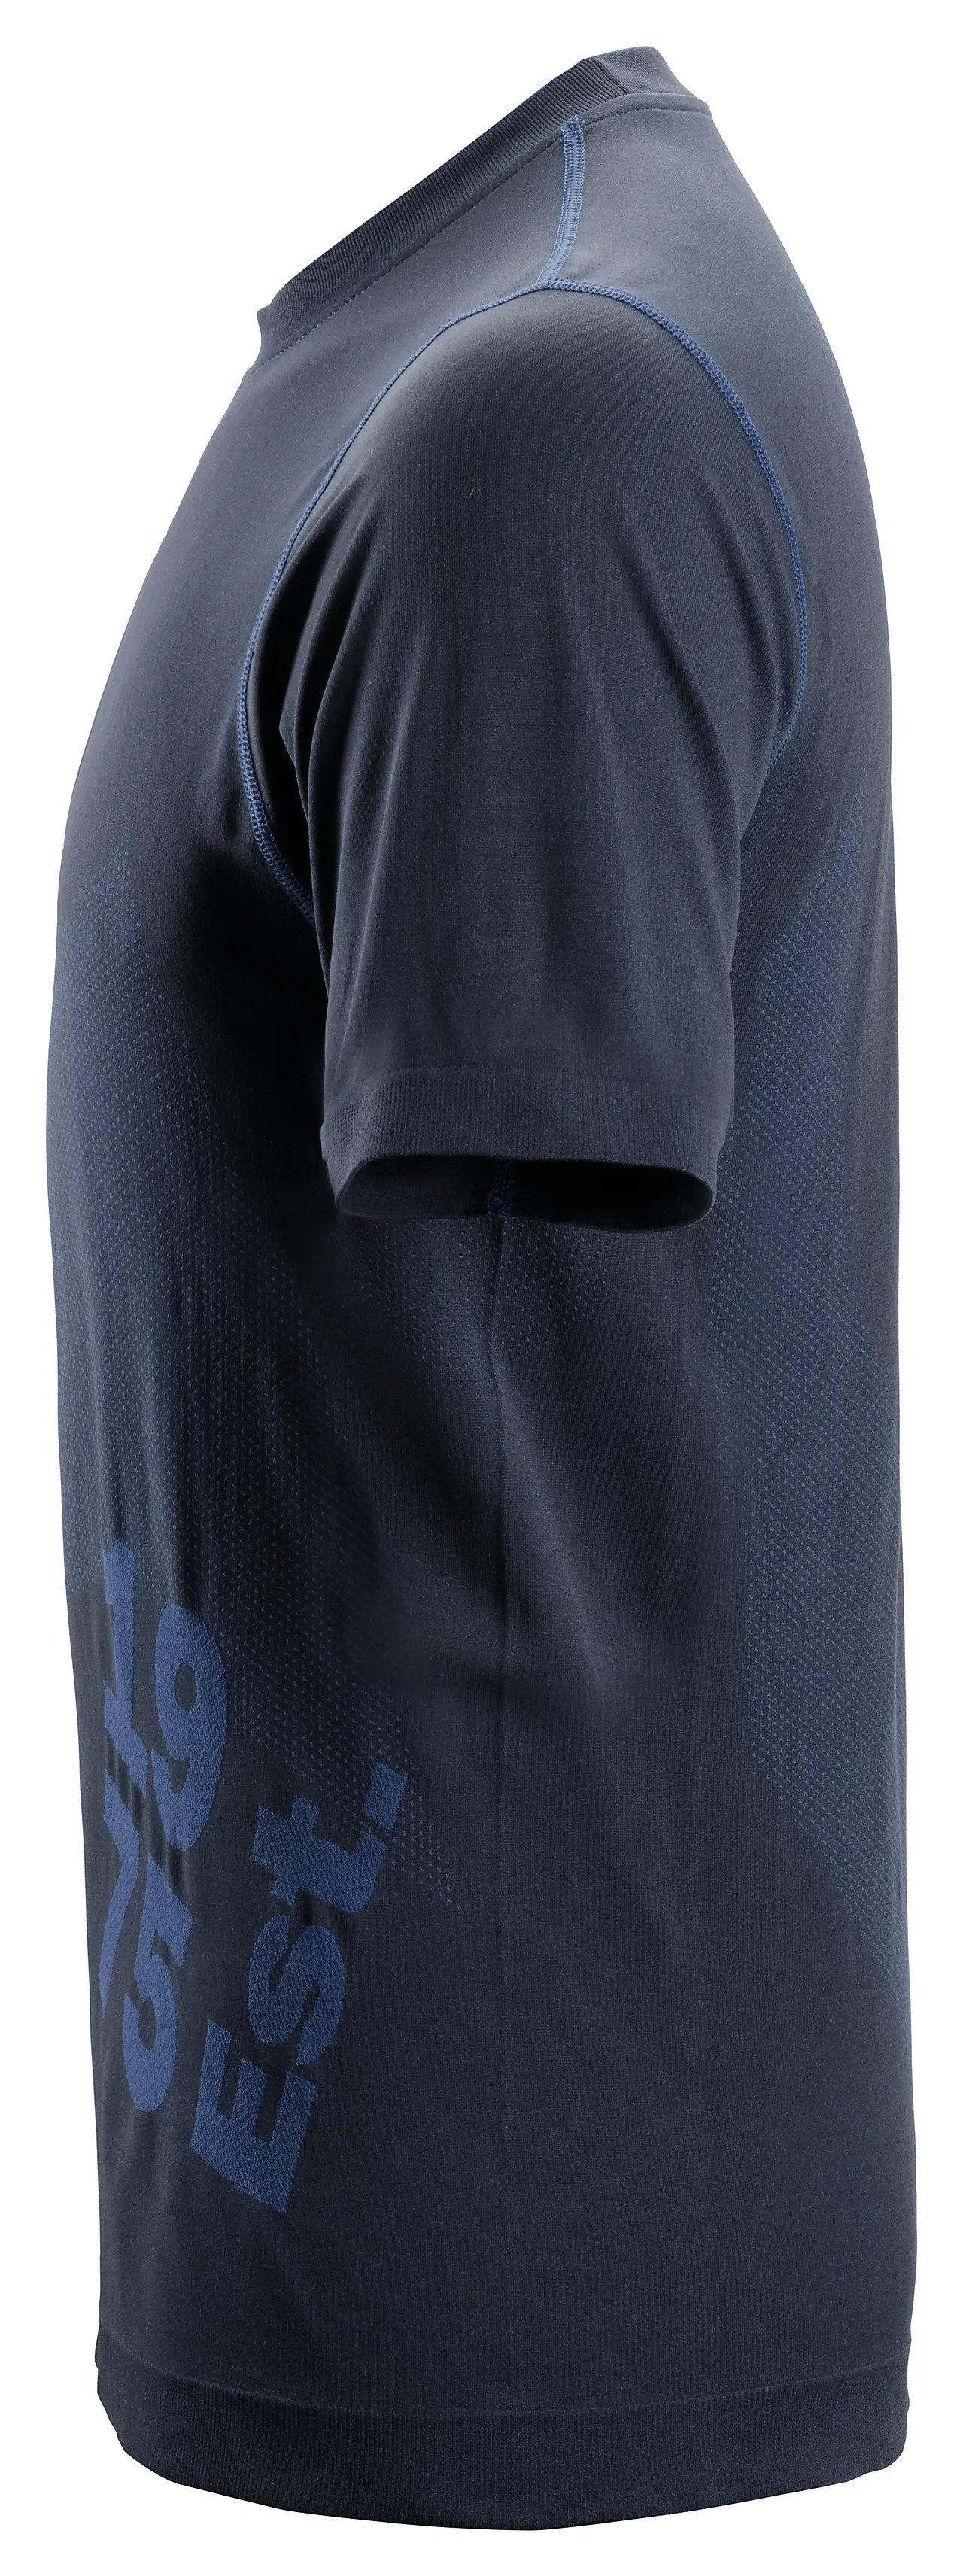 T-skjorte 2519 mørkeblå str XS Snickers 37,5 tech flexiwork null - XS - 3 - Miniatyr